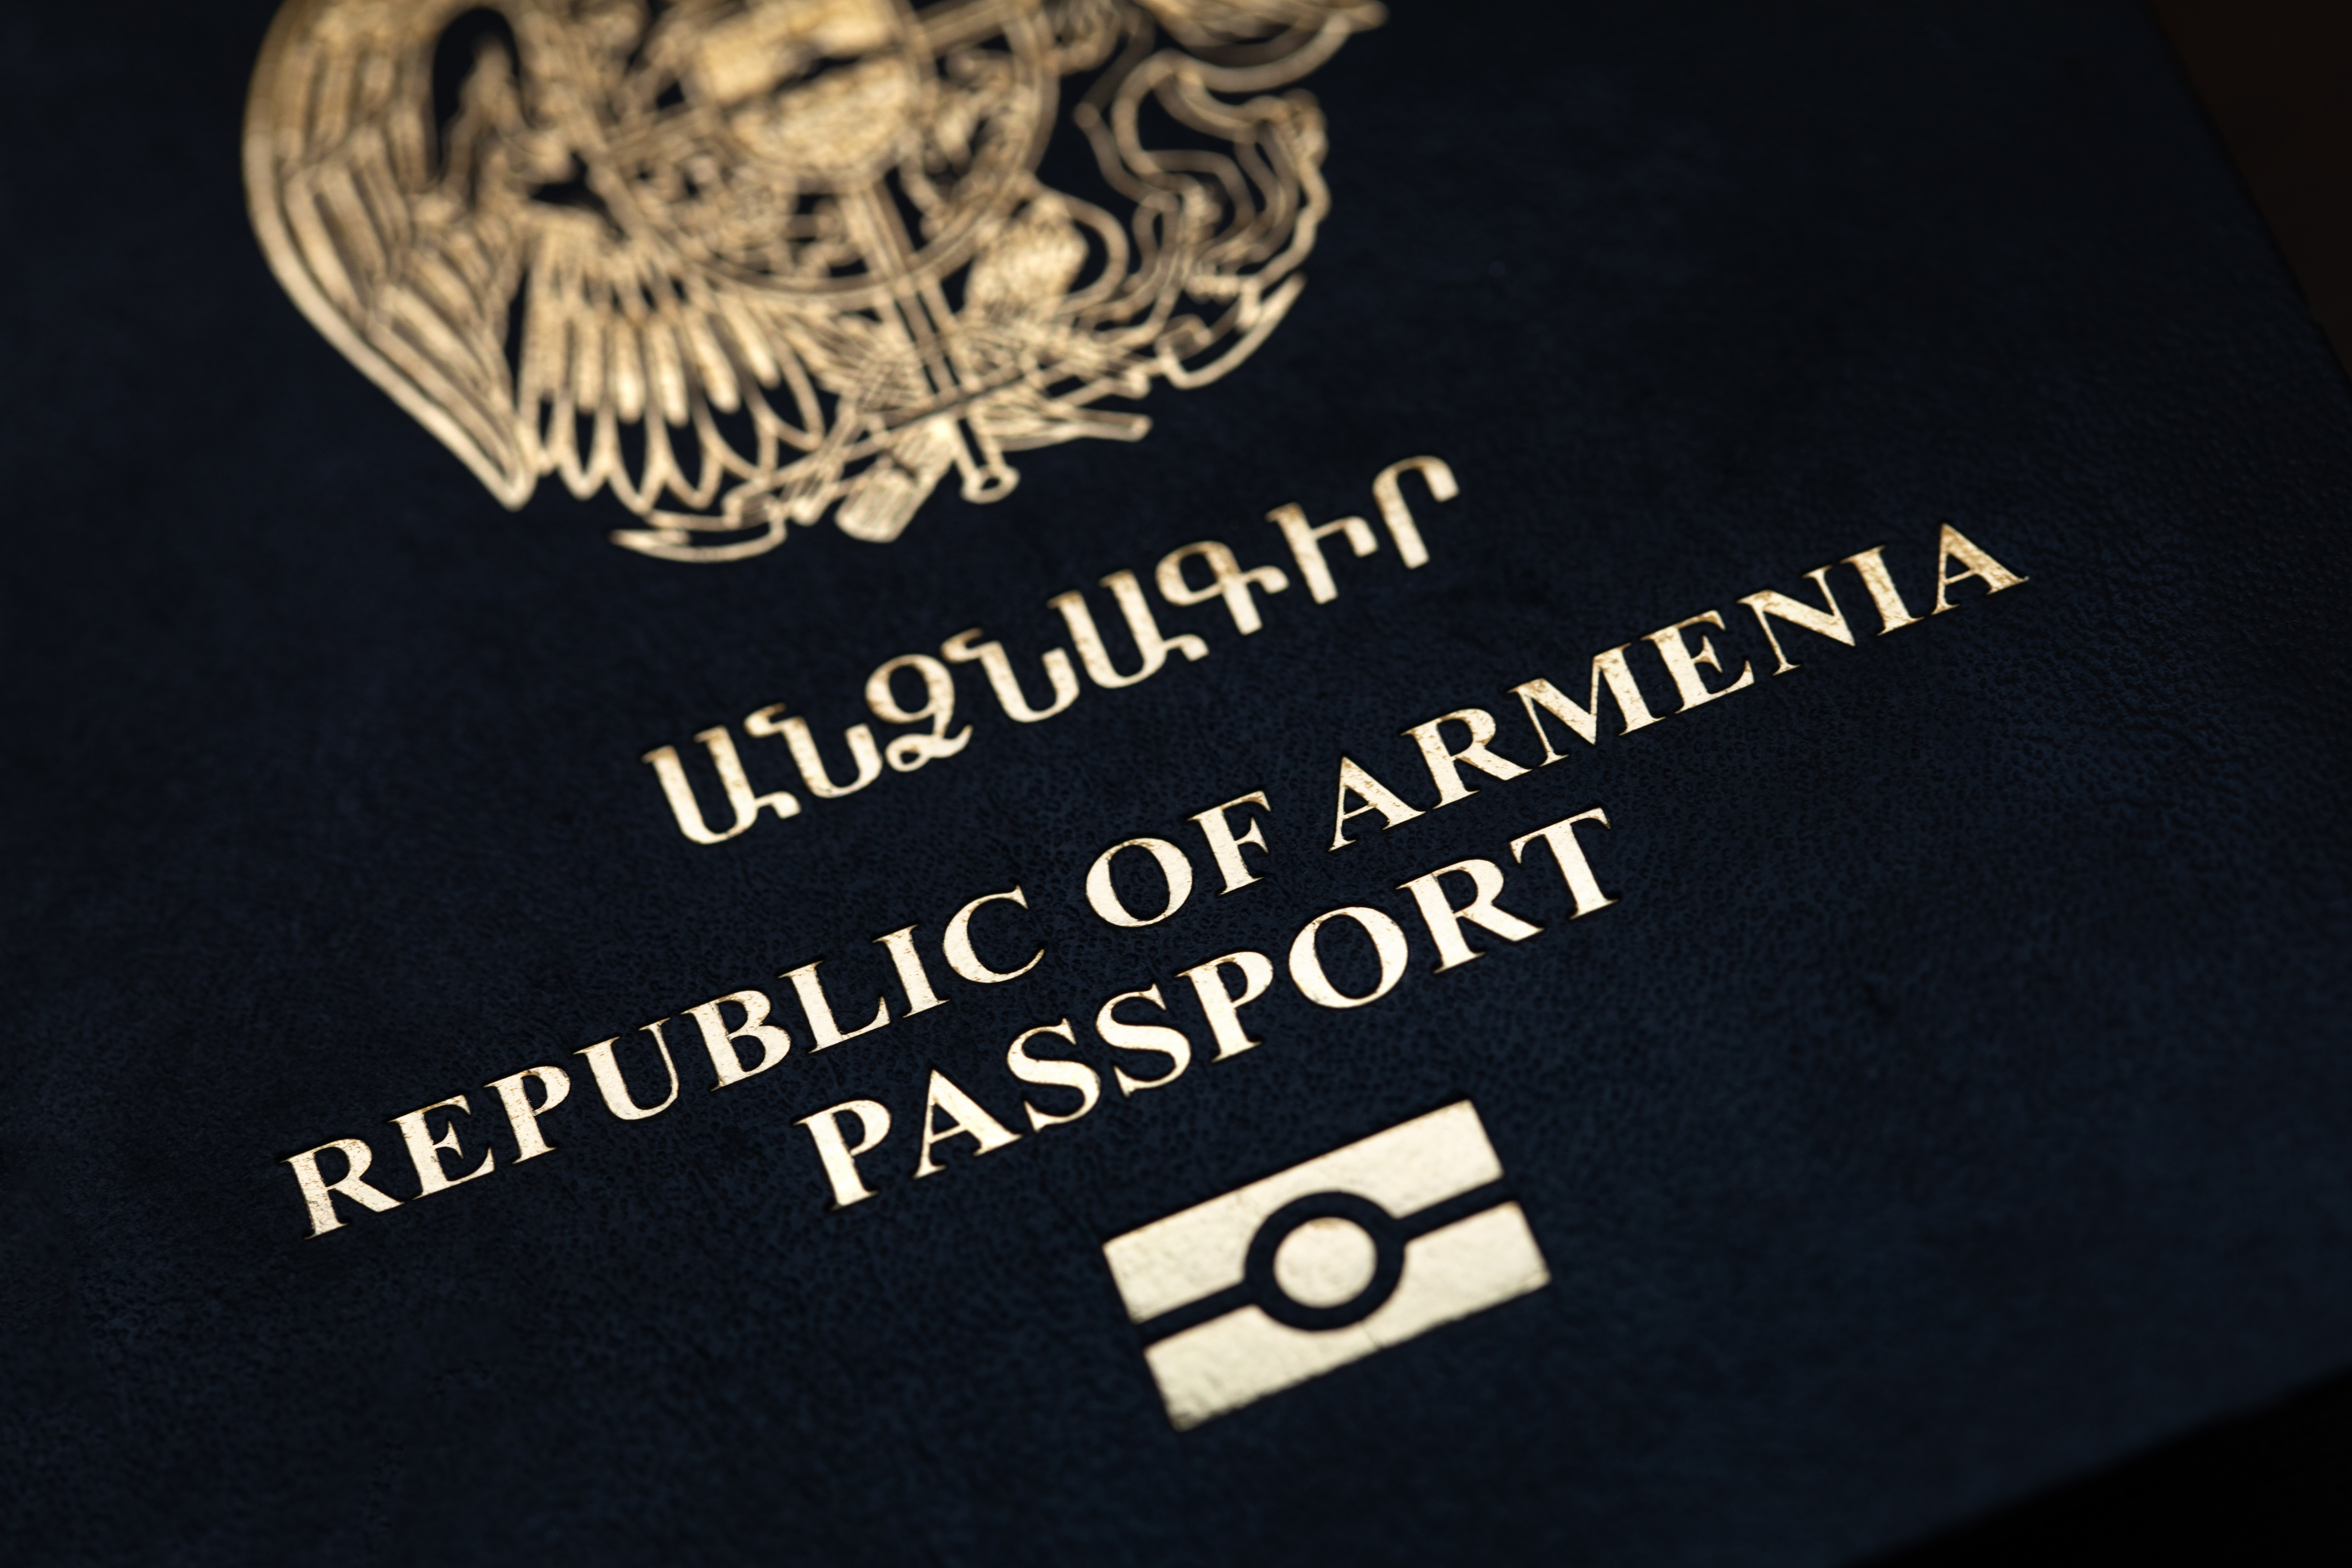 Паспорт Армении